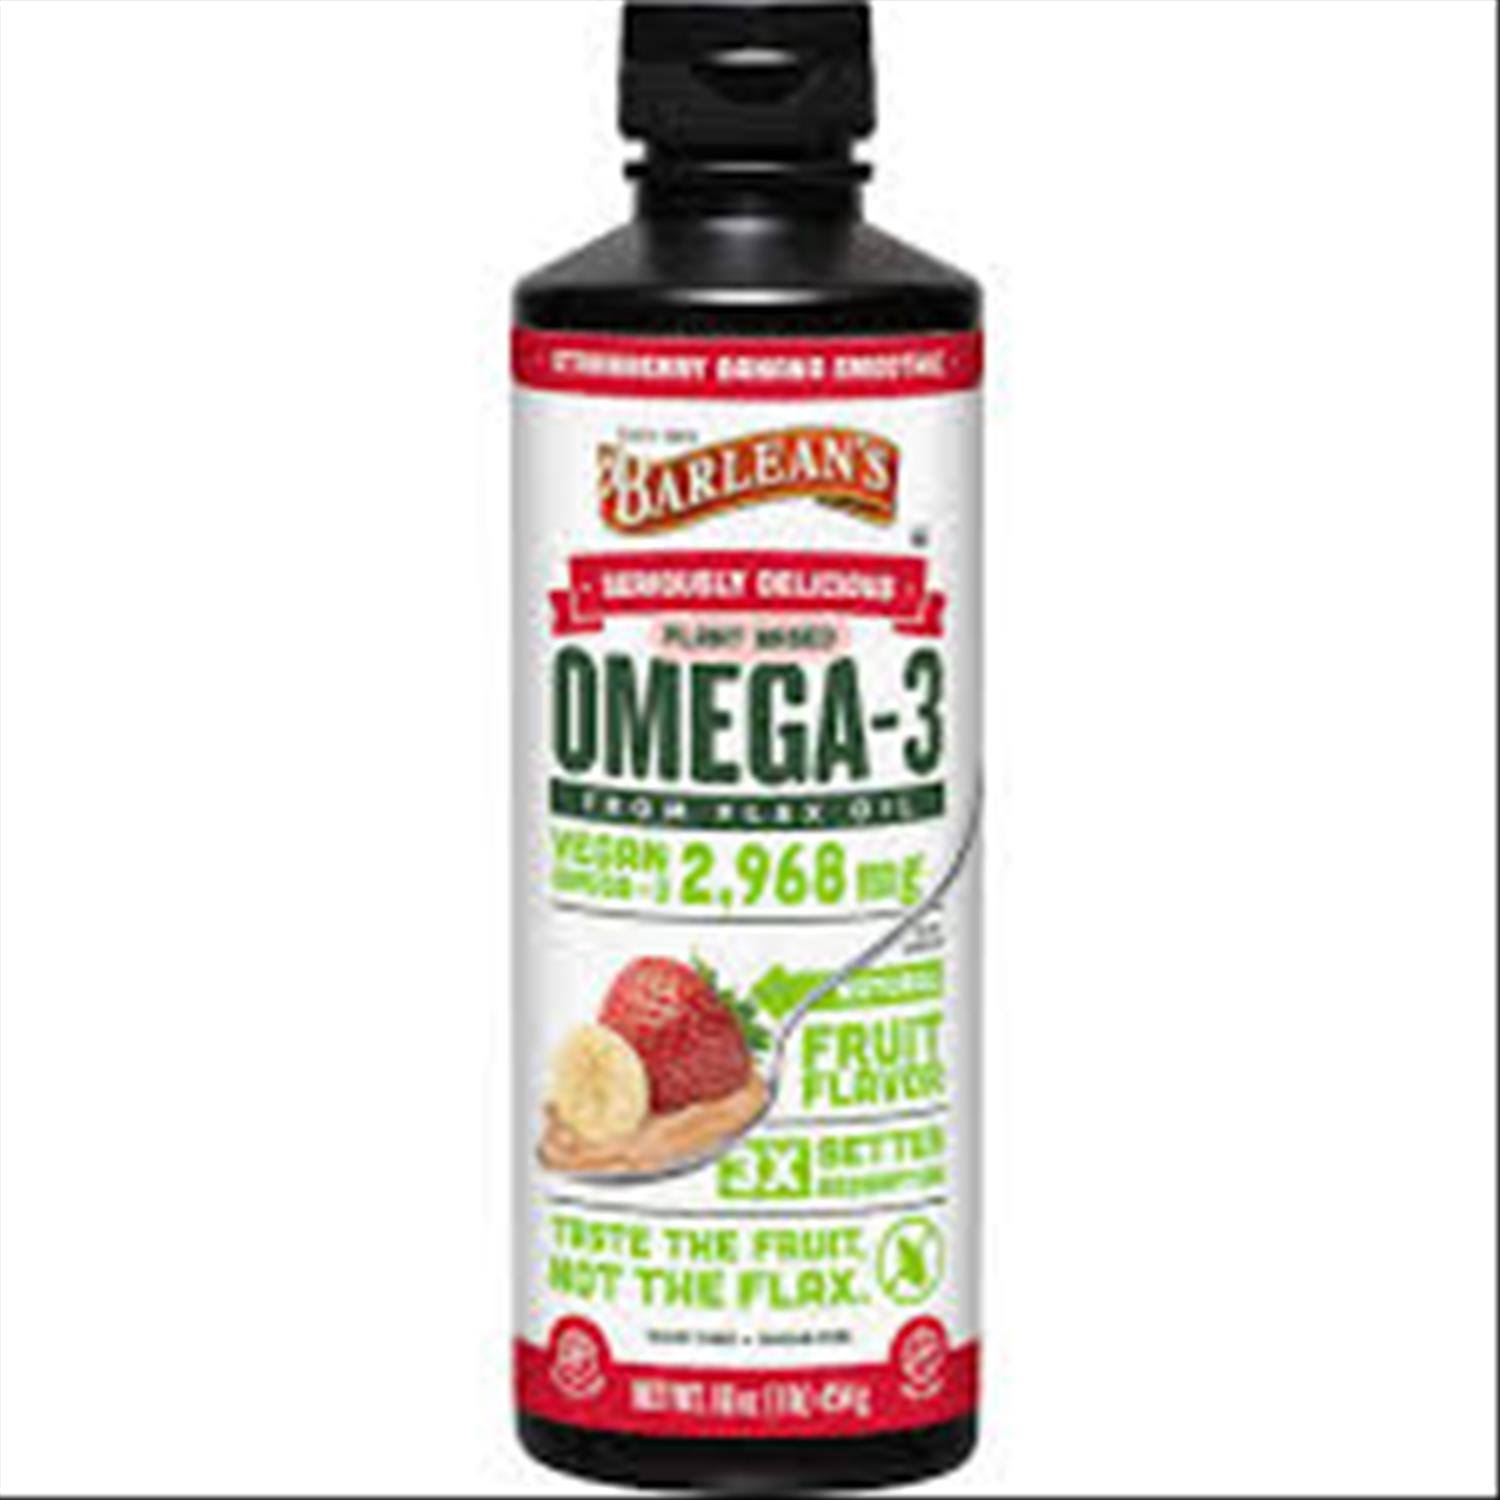 Barlean's Omega Swirl Flax Oil